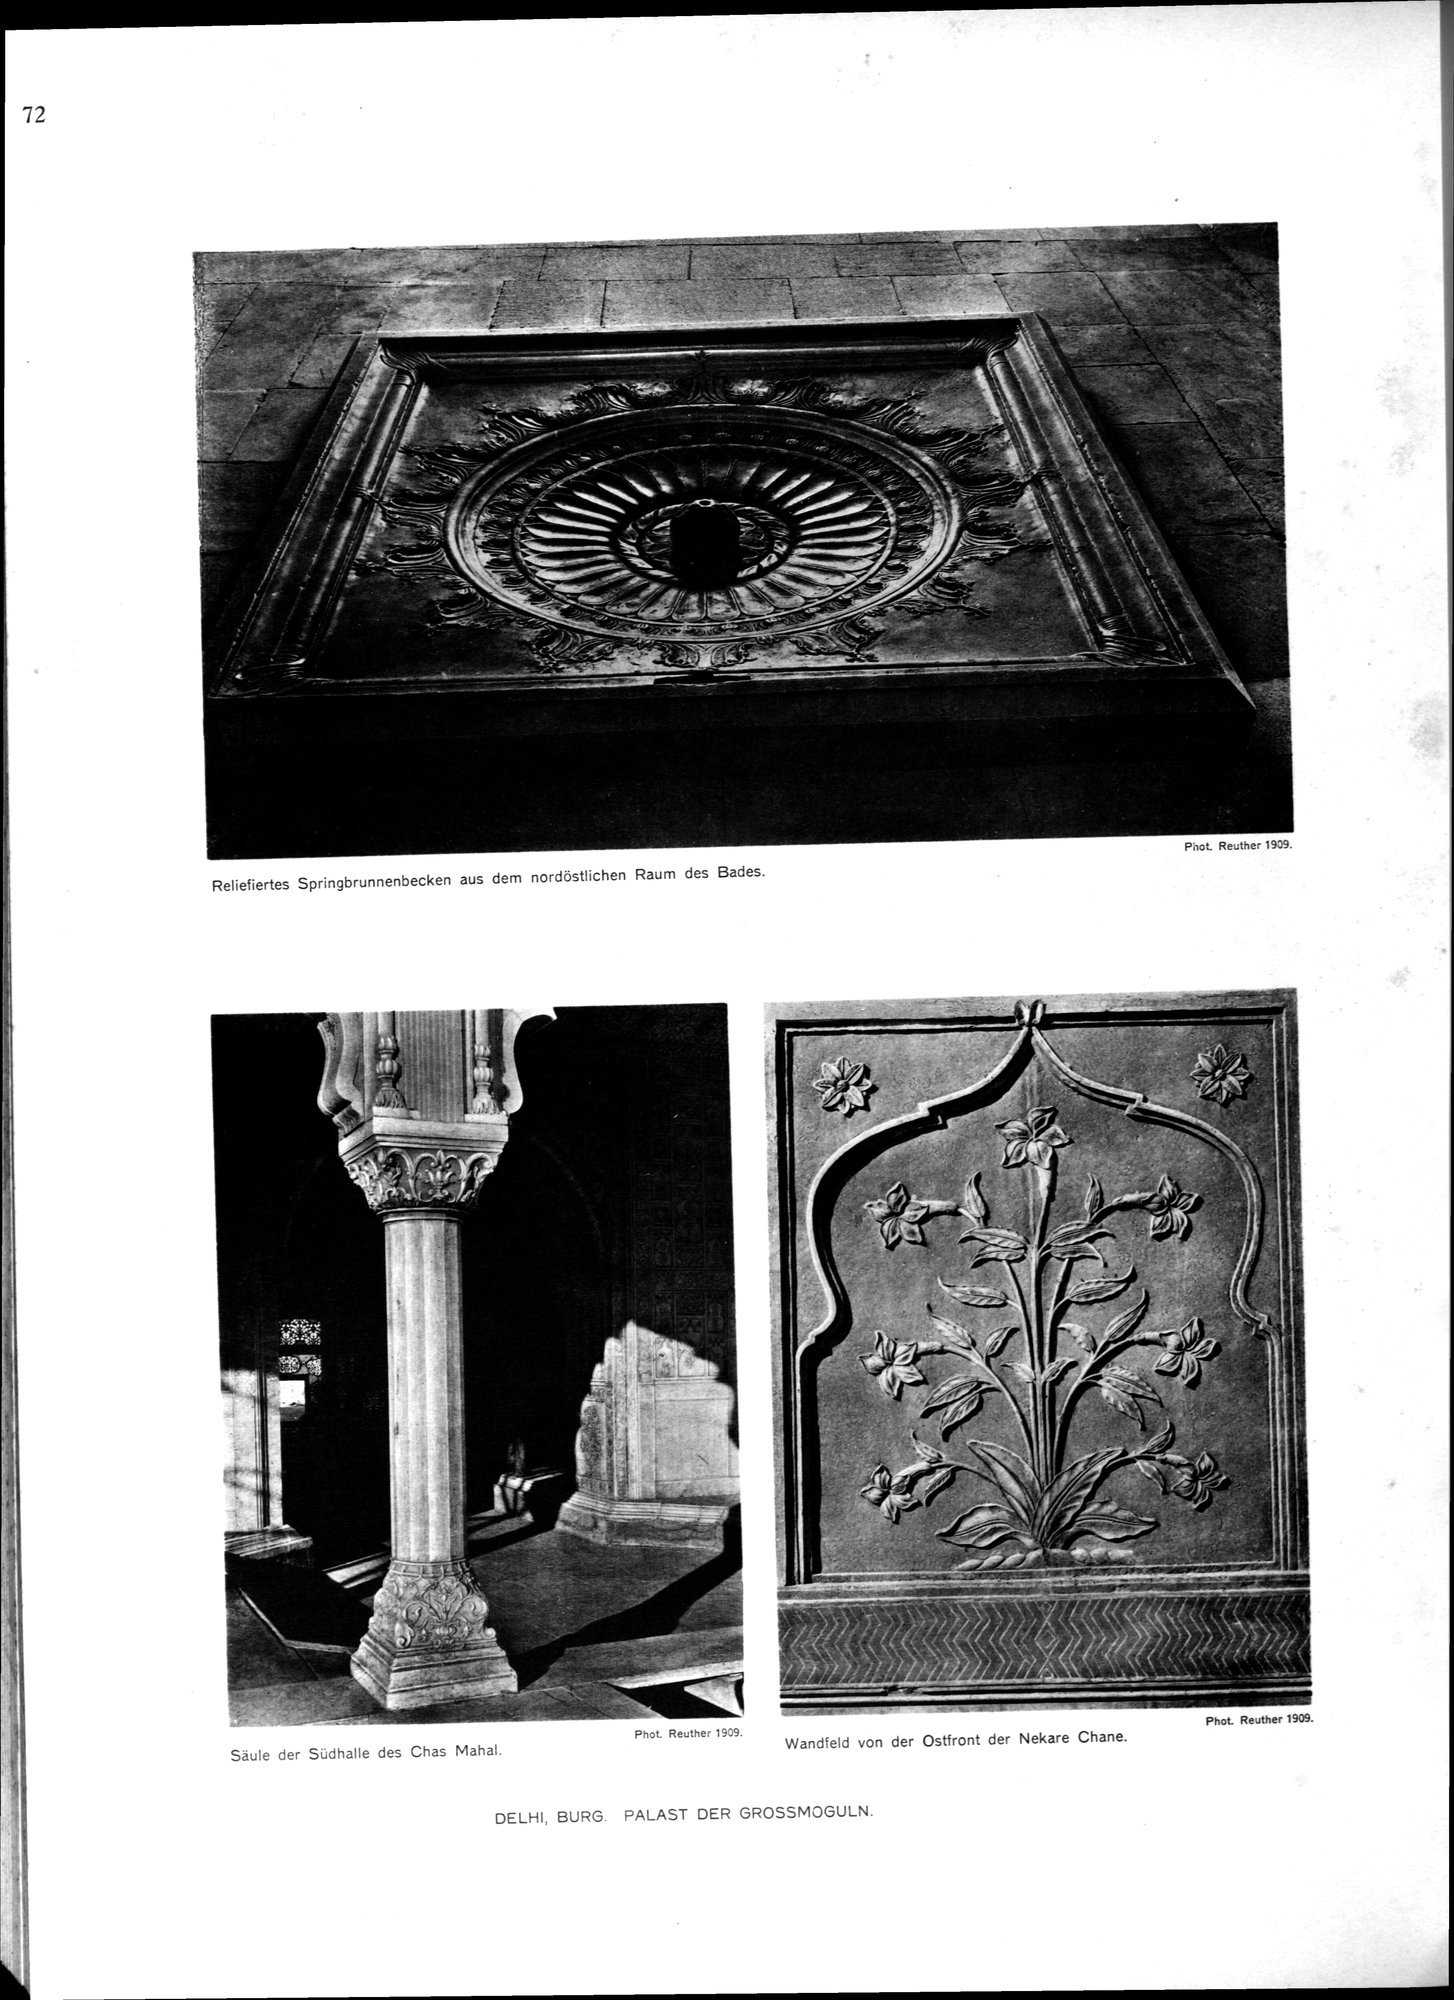 Indische Palaste und Wohnhauser : vol.1 / Page 188 (Grayscale High Resolution Image)